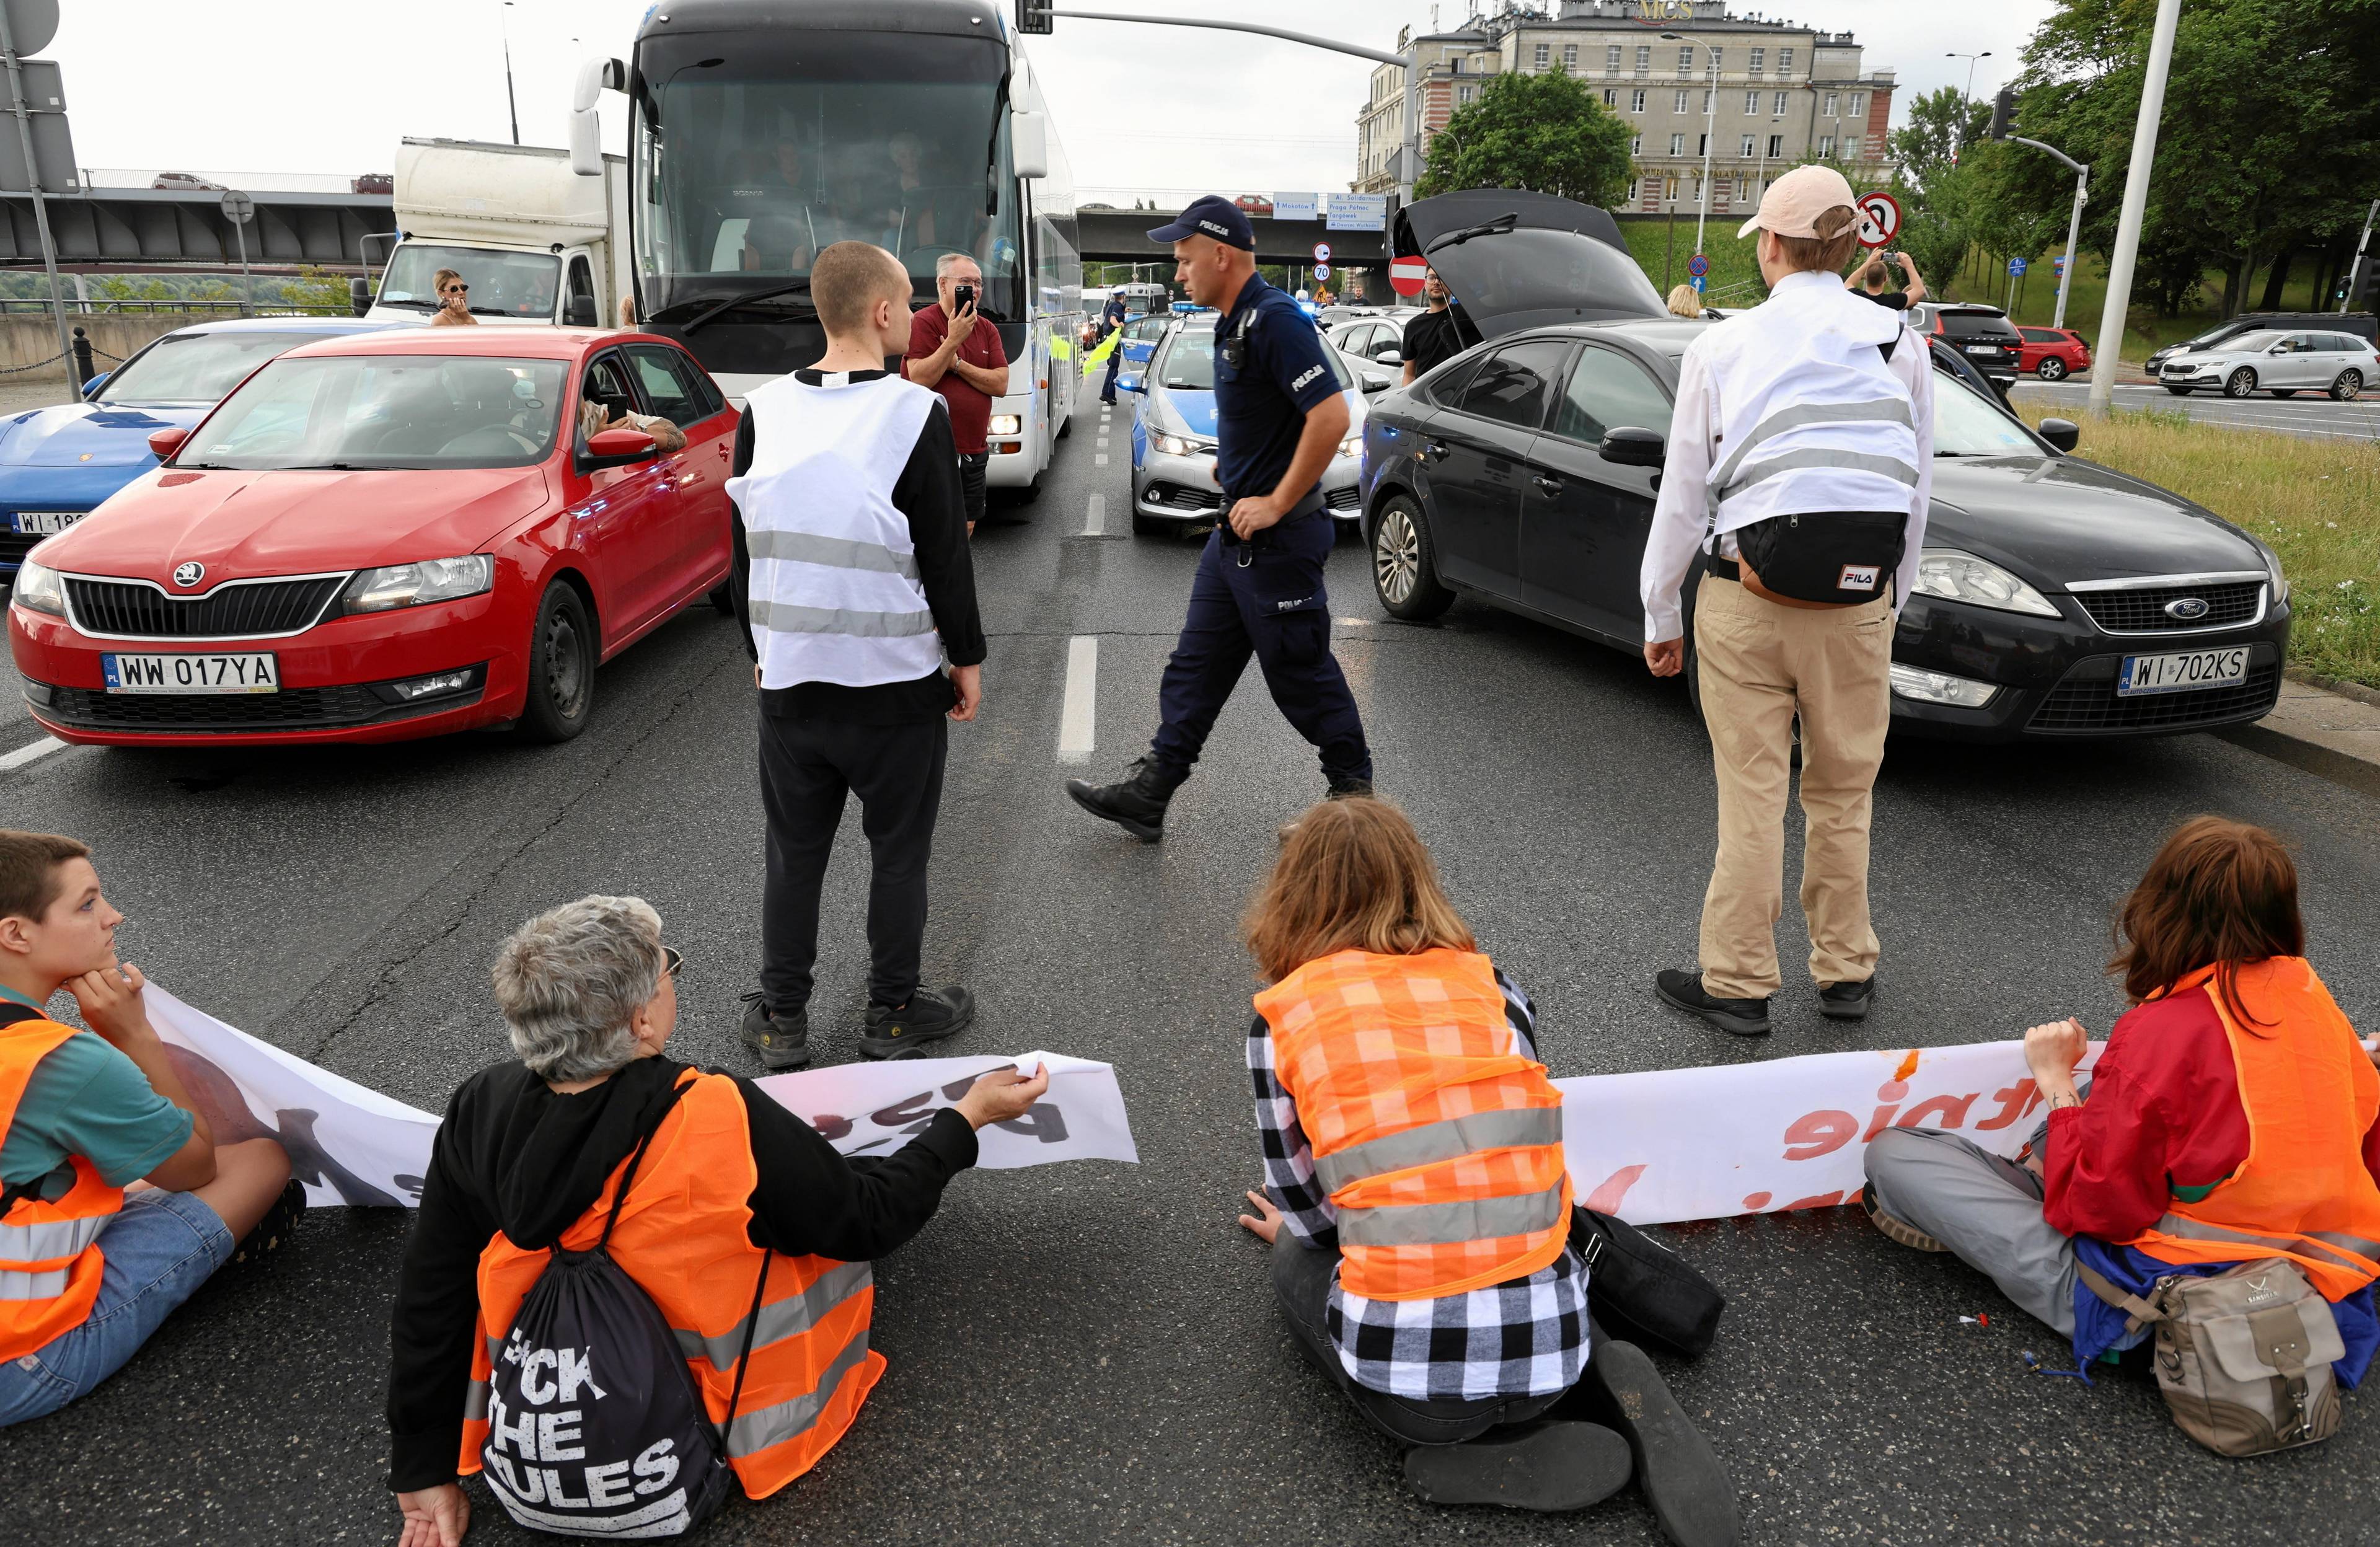 aktywiści siedzą na jezdni w kamizelkach ostrzegawczych, blokują jezdnię, na zdjęciu widać też policję